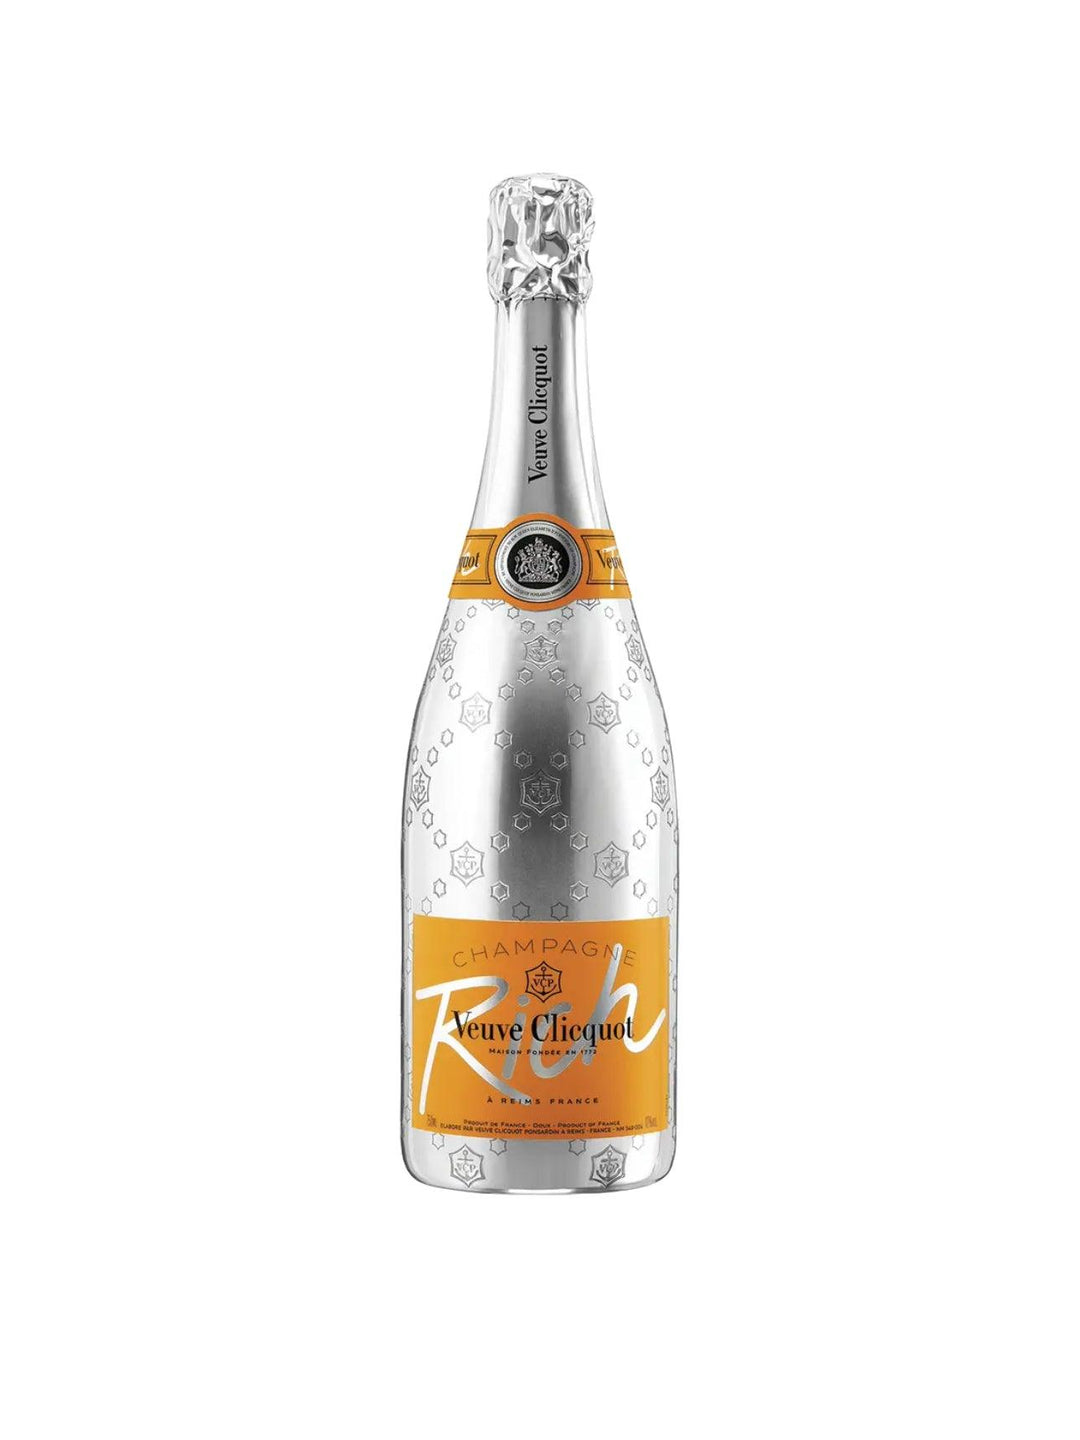 Veuve Clicquot Rich Champagne - Liquor Luxe